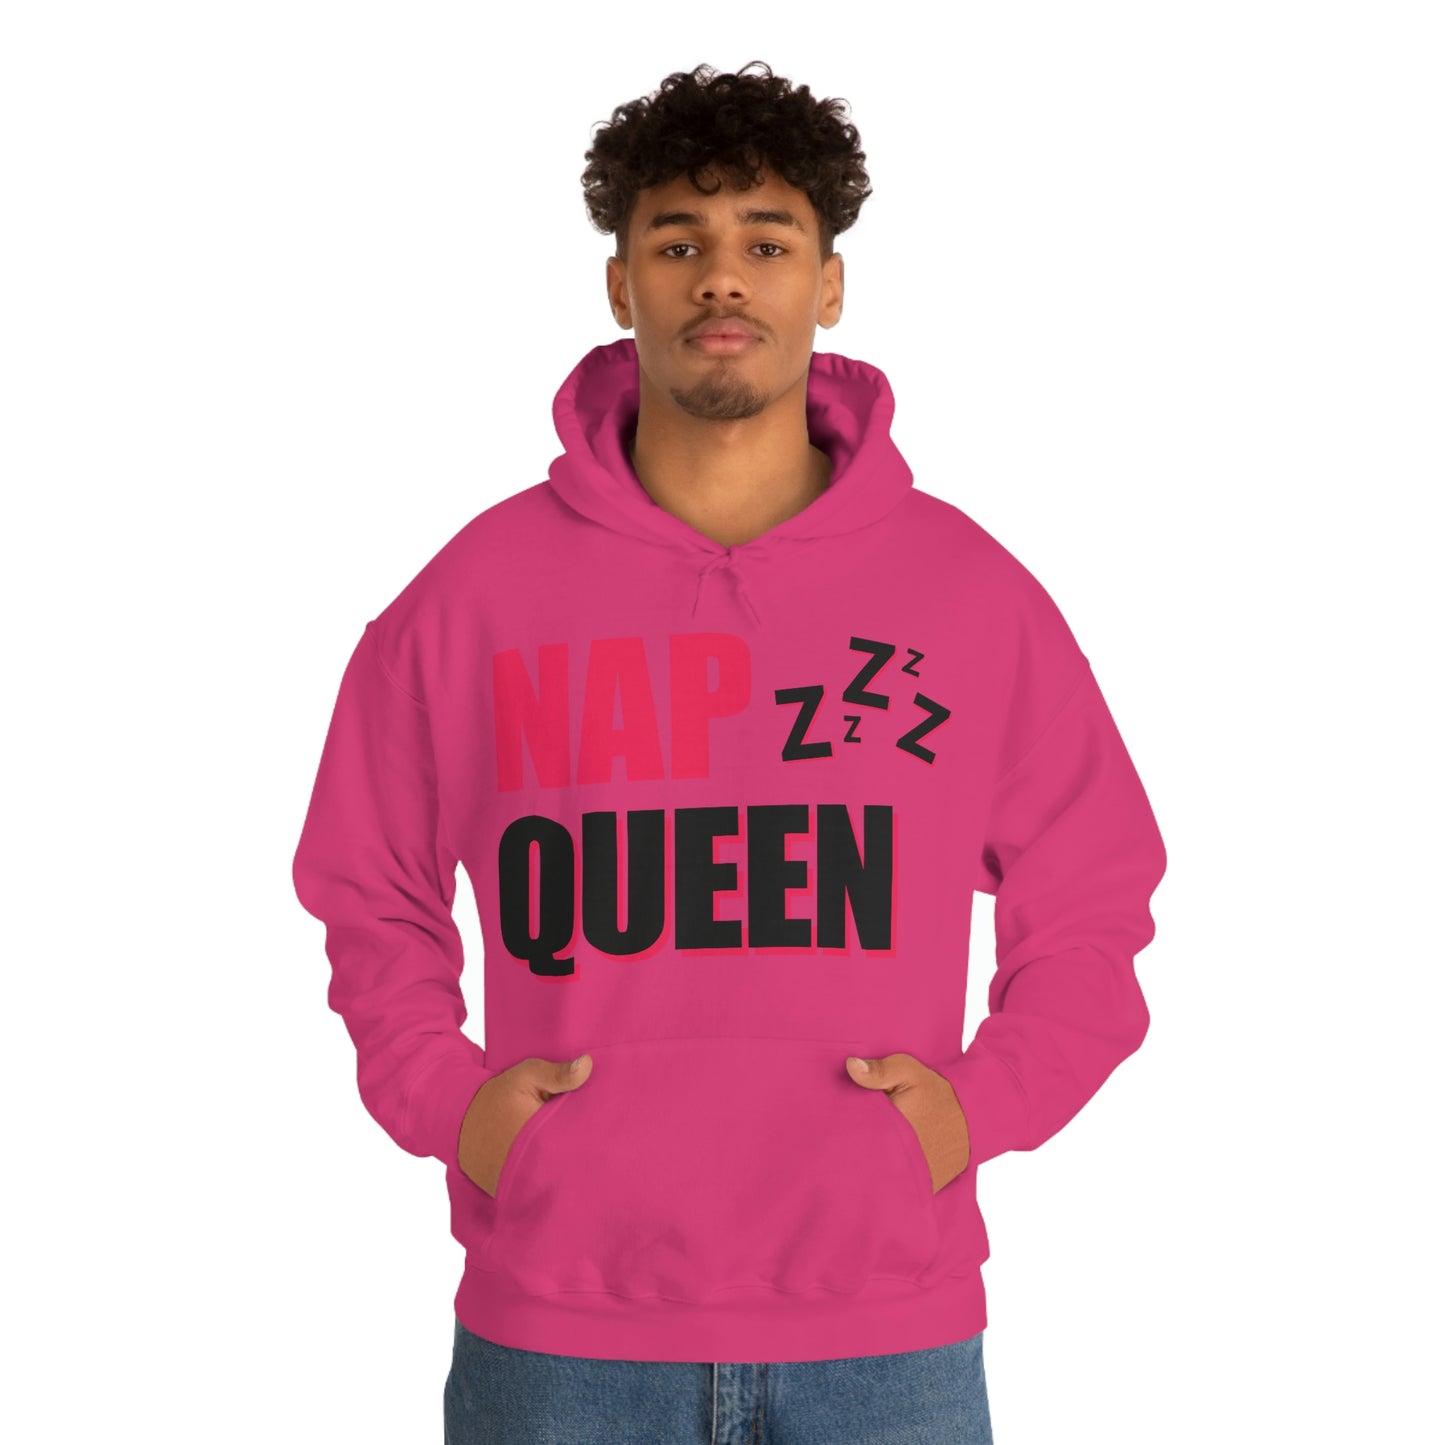 Nap Queen Unisex Hooded Sweatshirt